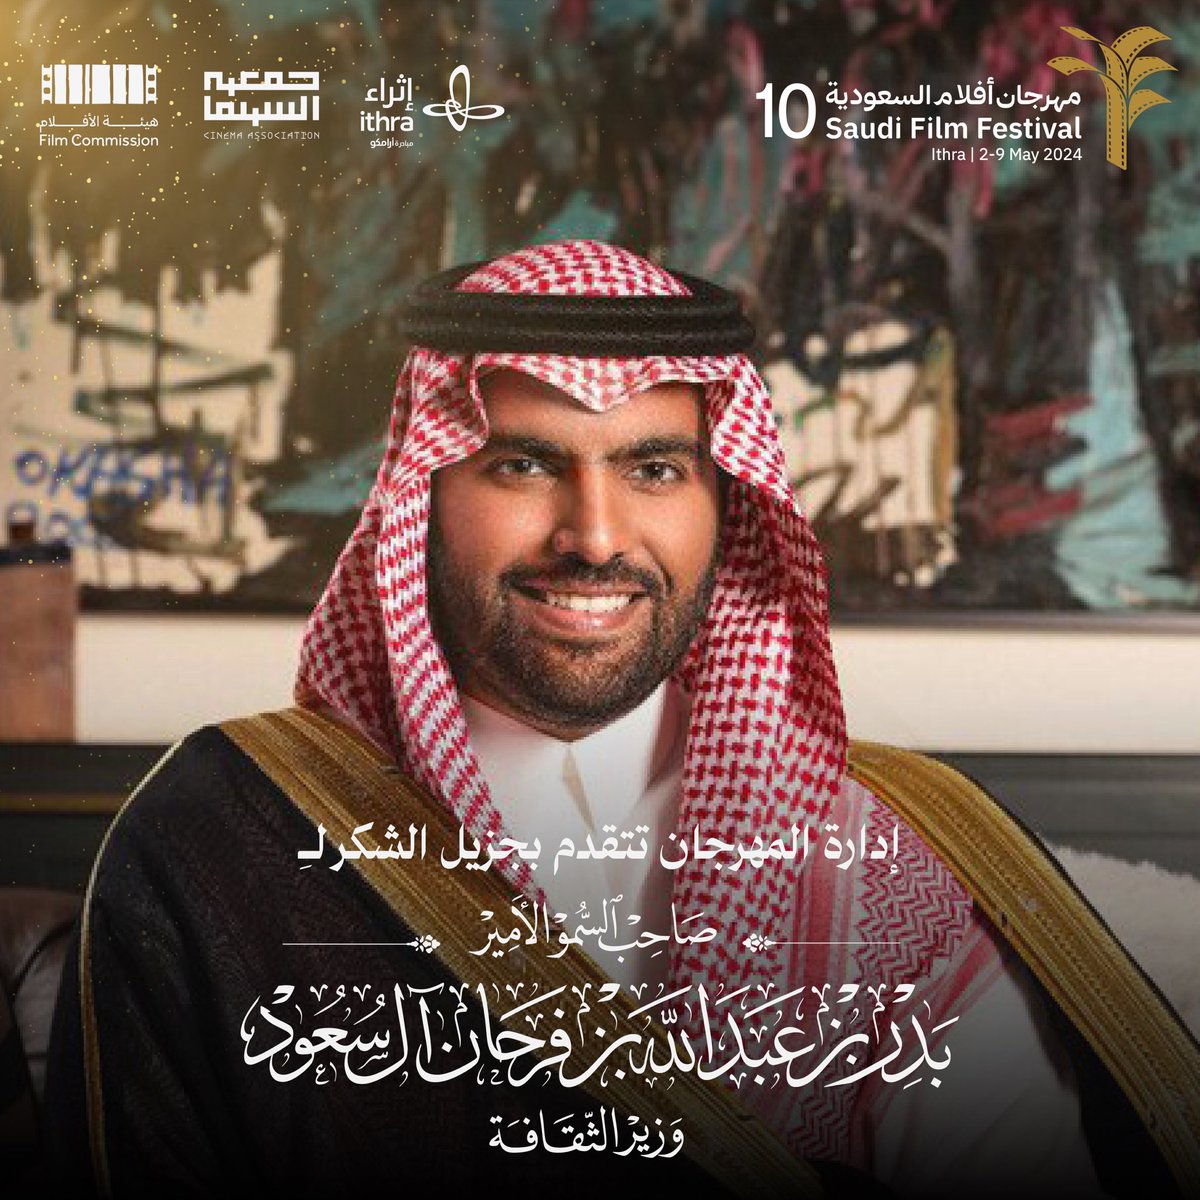 تتقدم إدارة #مهرجان_أفلام_السعودية بالشكر لصاحب السمو الأمير بدر بن عبدالله بن فرحان 'وزير الثقافة' على اهتمامه بالقطاع السينمائي ودعمه لصُنّاع الأفلام. شكراً سمو الأمير @BadrFAlSaud